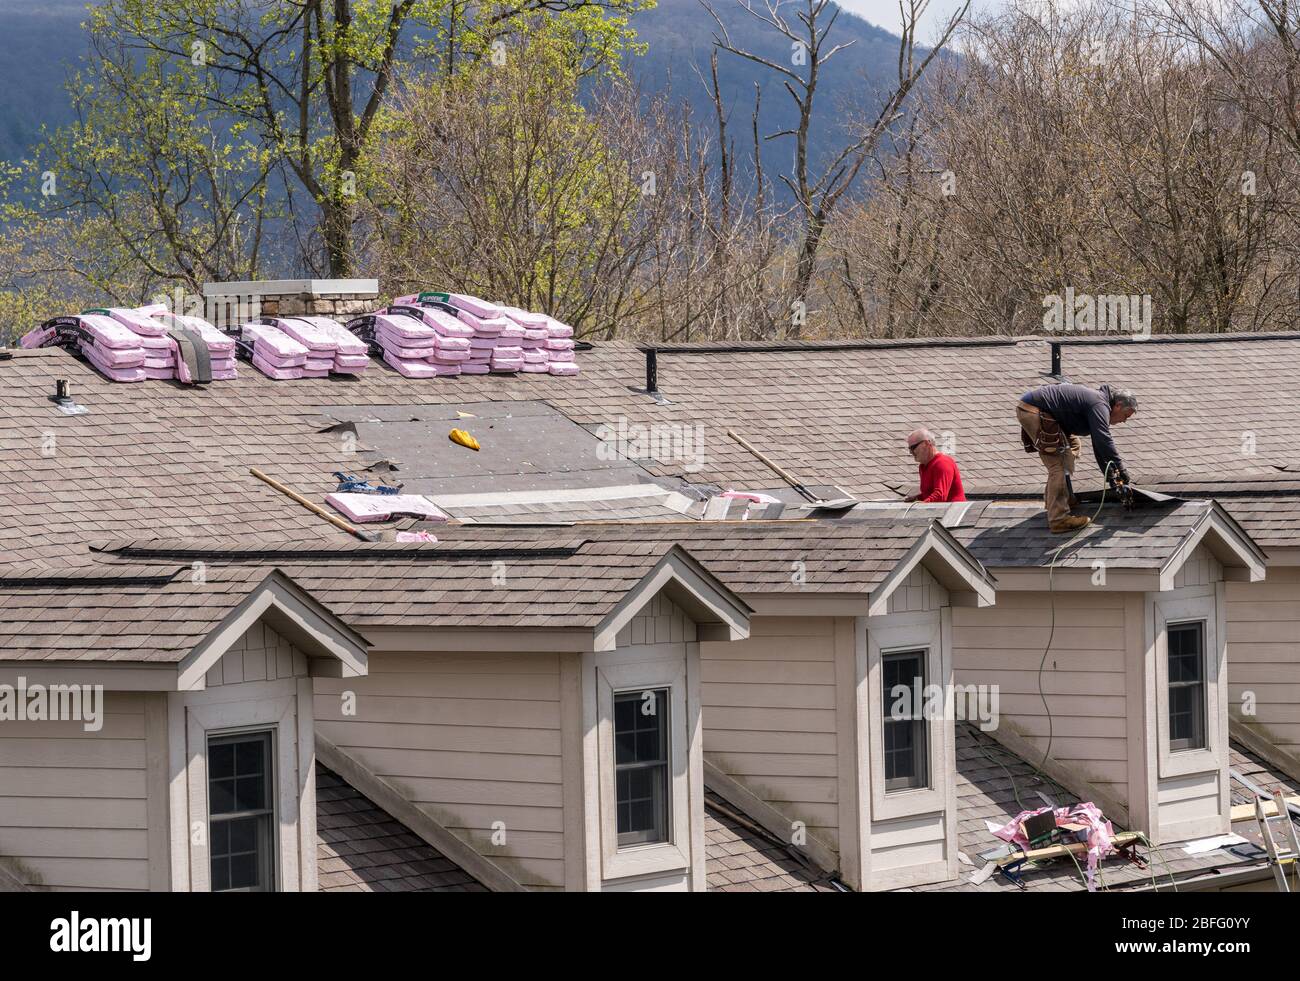 Roofing Vorbereitung Asphaltschindeln Installation auf Haus Bau Holzdach  mit Bitumen Spray und Schutz Seil, Sicherheit Kit. Roofing constru  Stockfotografie - Alamy